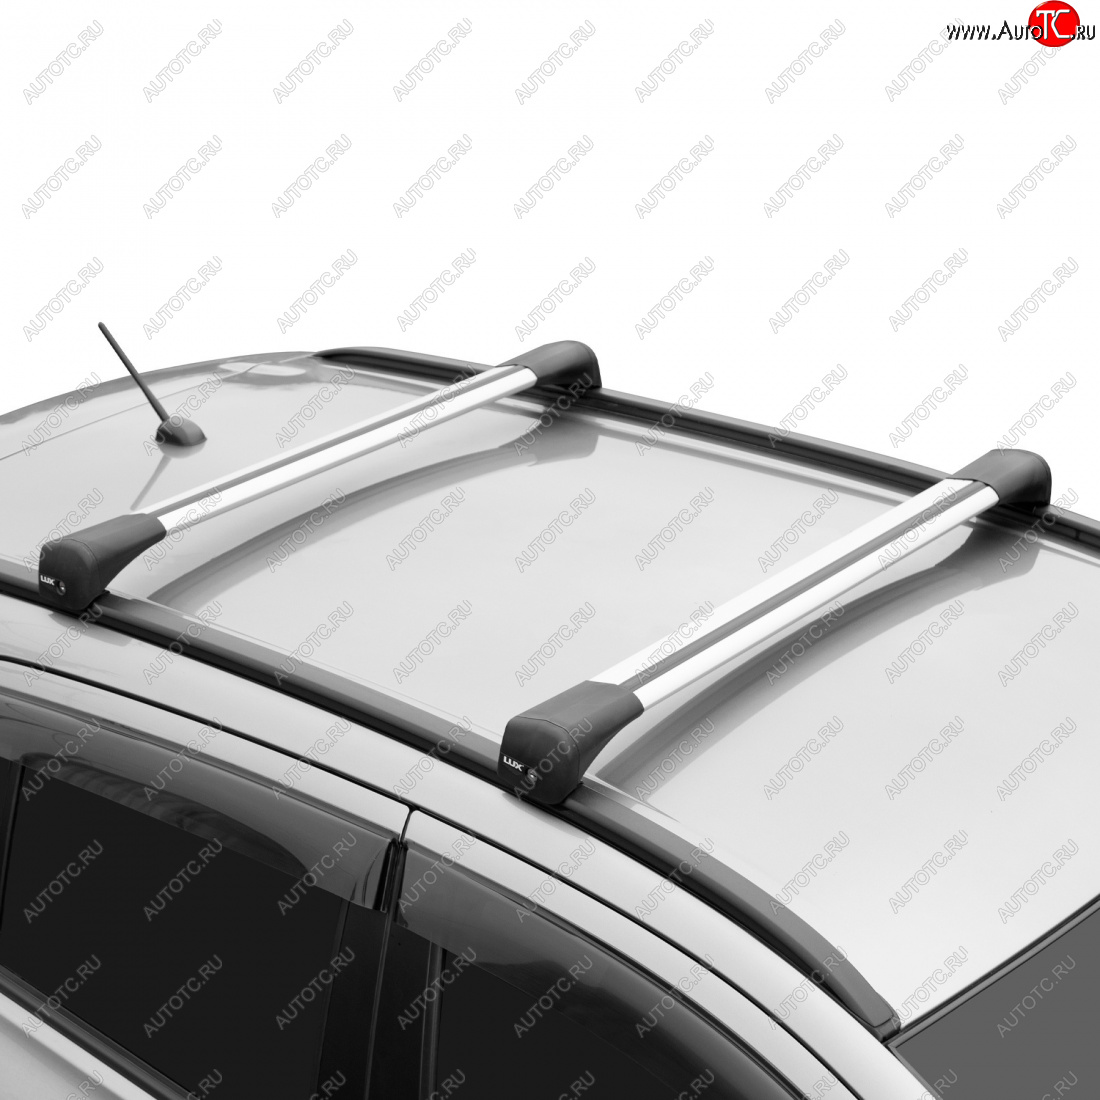 12 897 р. Багажник сборе на низкие рейлинги LUX BRIDGE  Hyundai Creta  SU (2021-2024) (дуги аэро-трэвэл, серебро, 99/99 см)